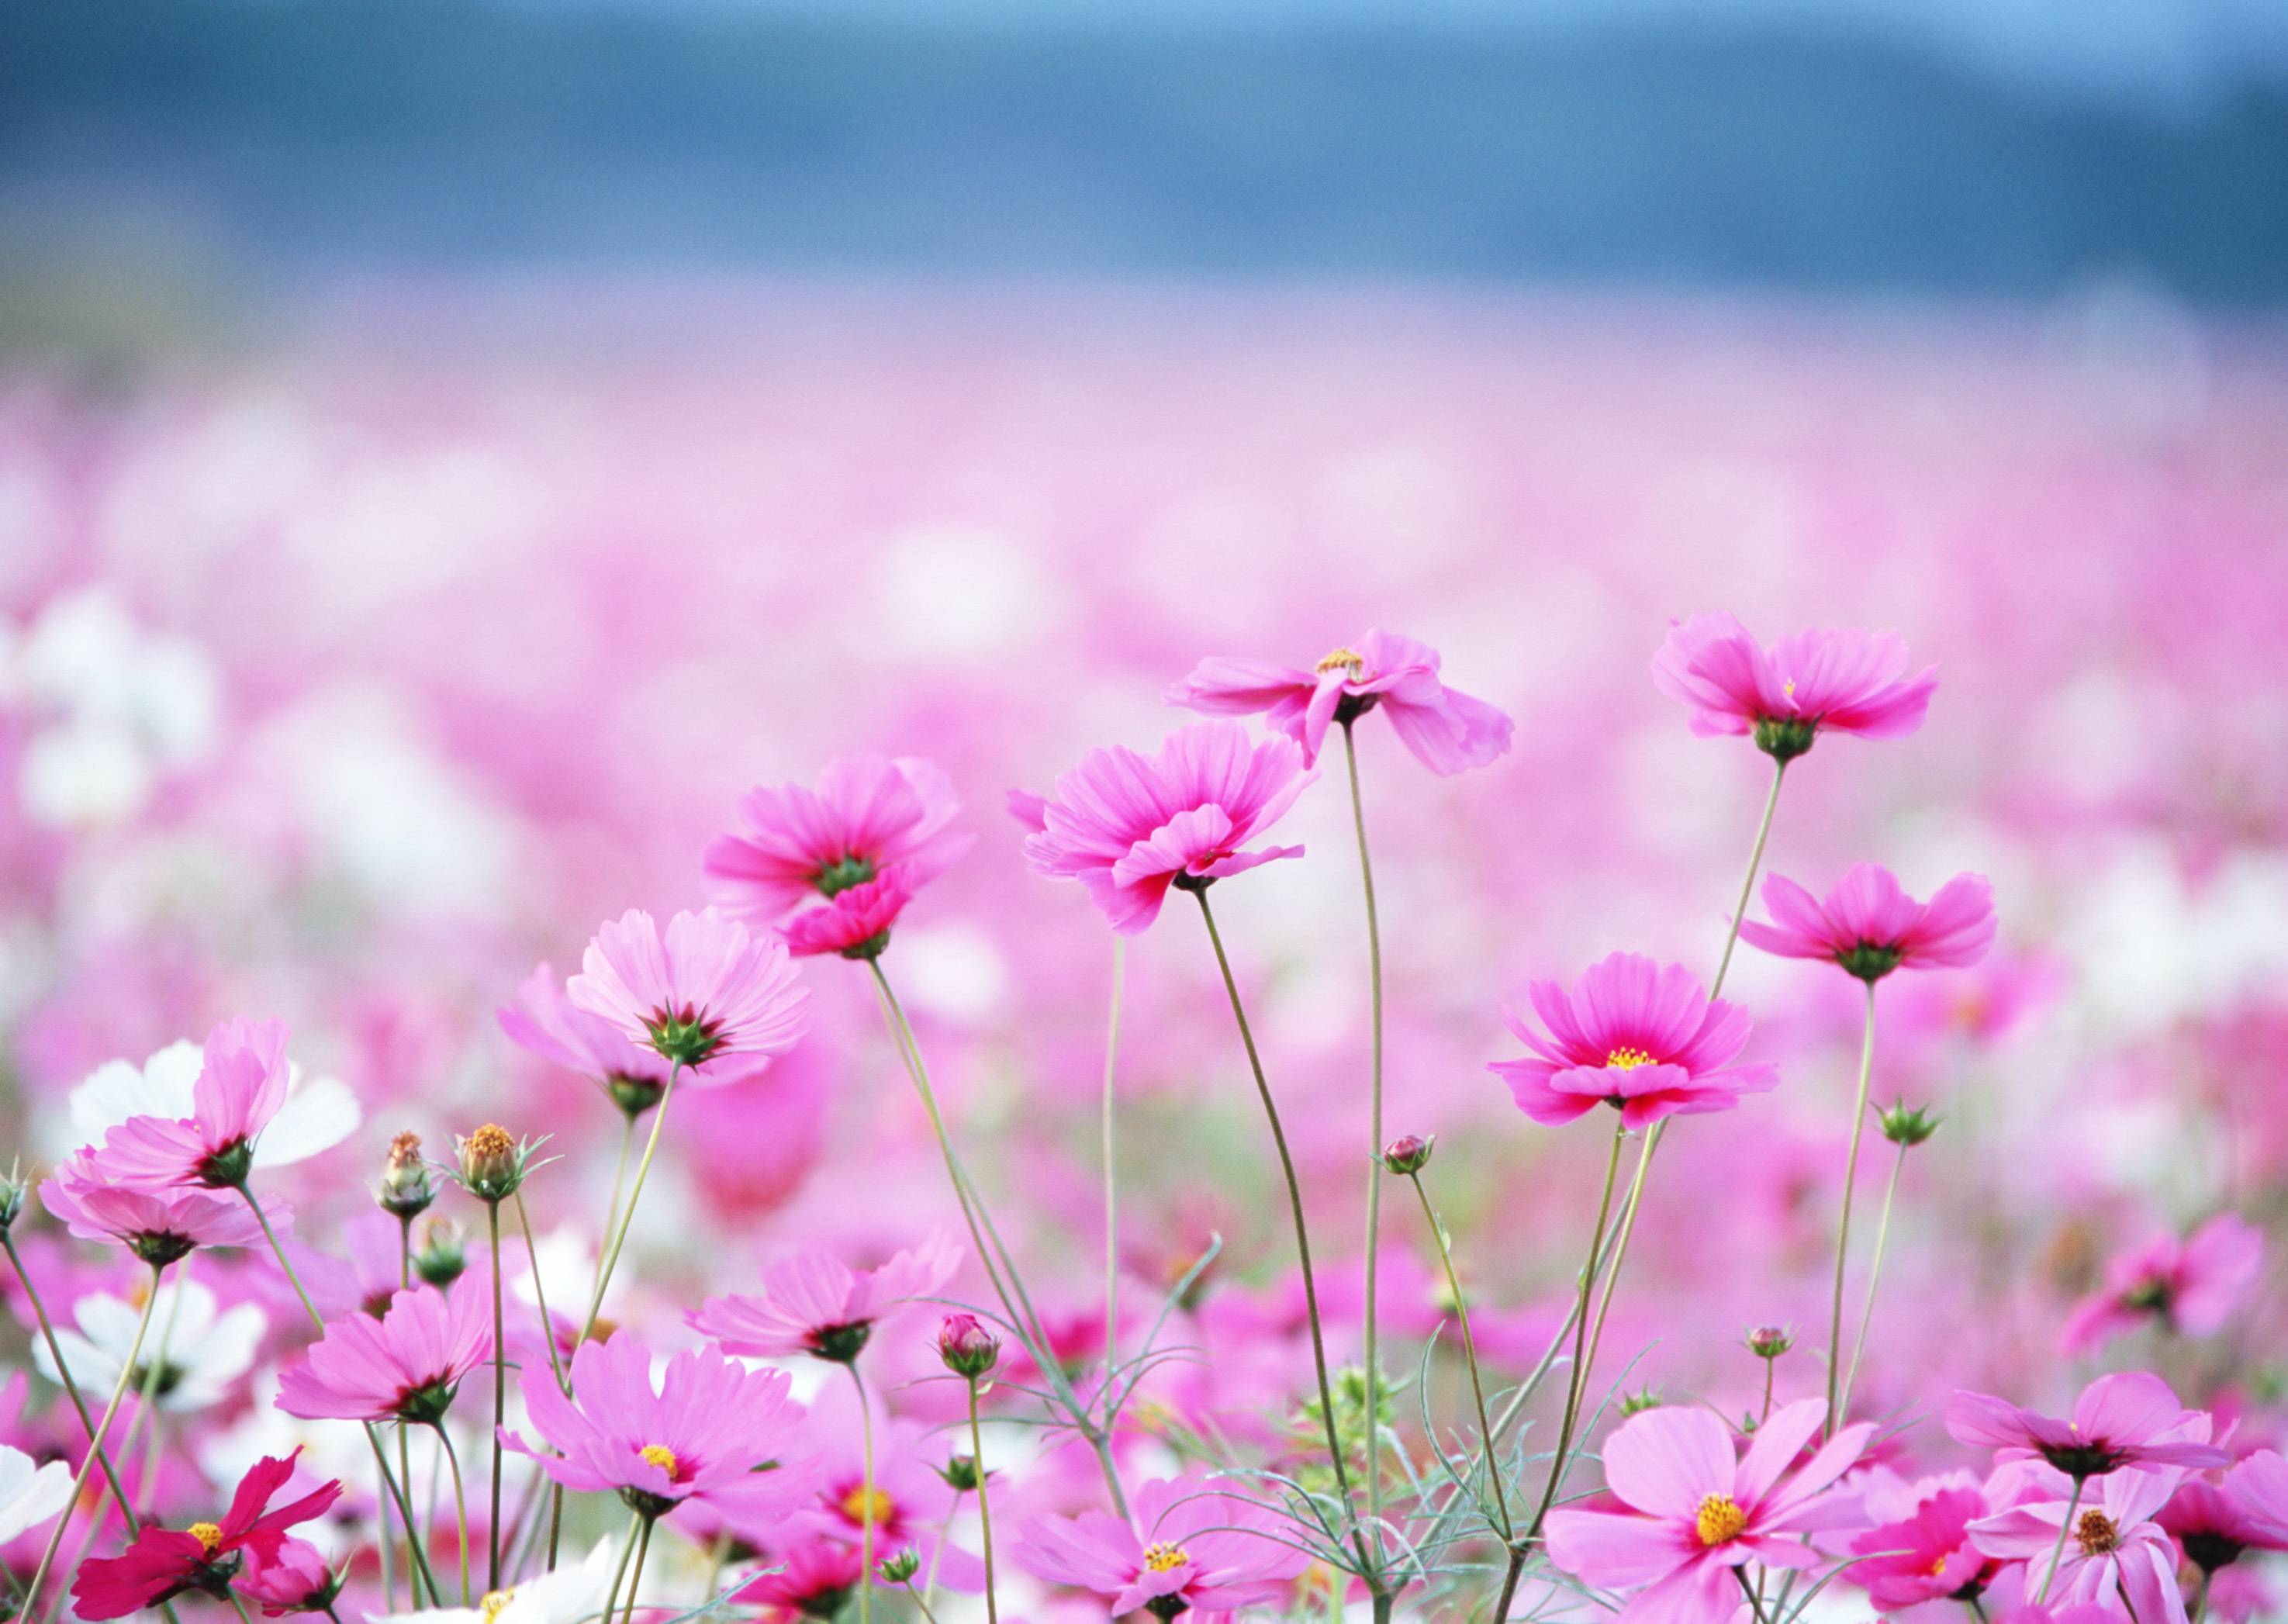 Nếu bạn yêu thích màu hồng, hãy xem thử bức ảnh về hoa cúc hồng này! Hương thơm nhẹ nhàng của nó sẽ đưa bạn đến với những giây phút thư giãn và yên bình nhất trong ngày của mình.